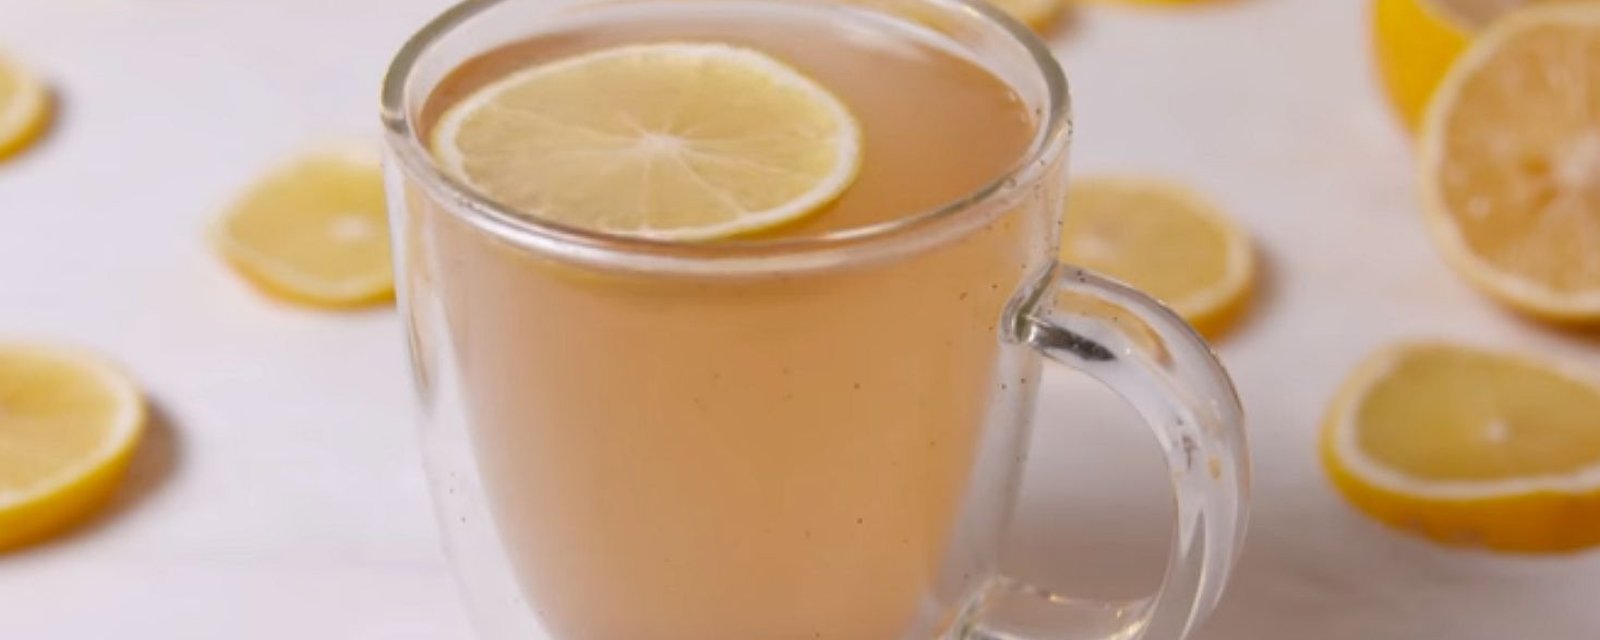 Combattez les excès des fêtes avec cette limonade chaude et épicée